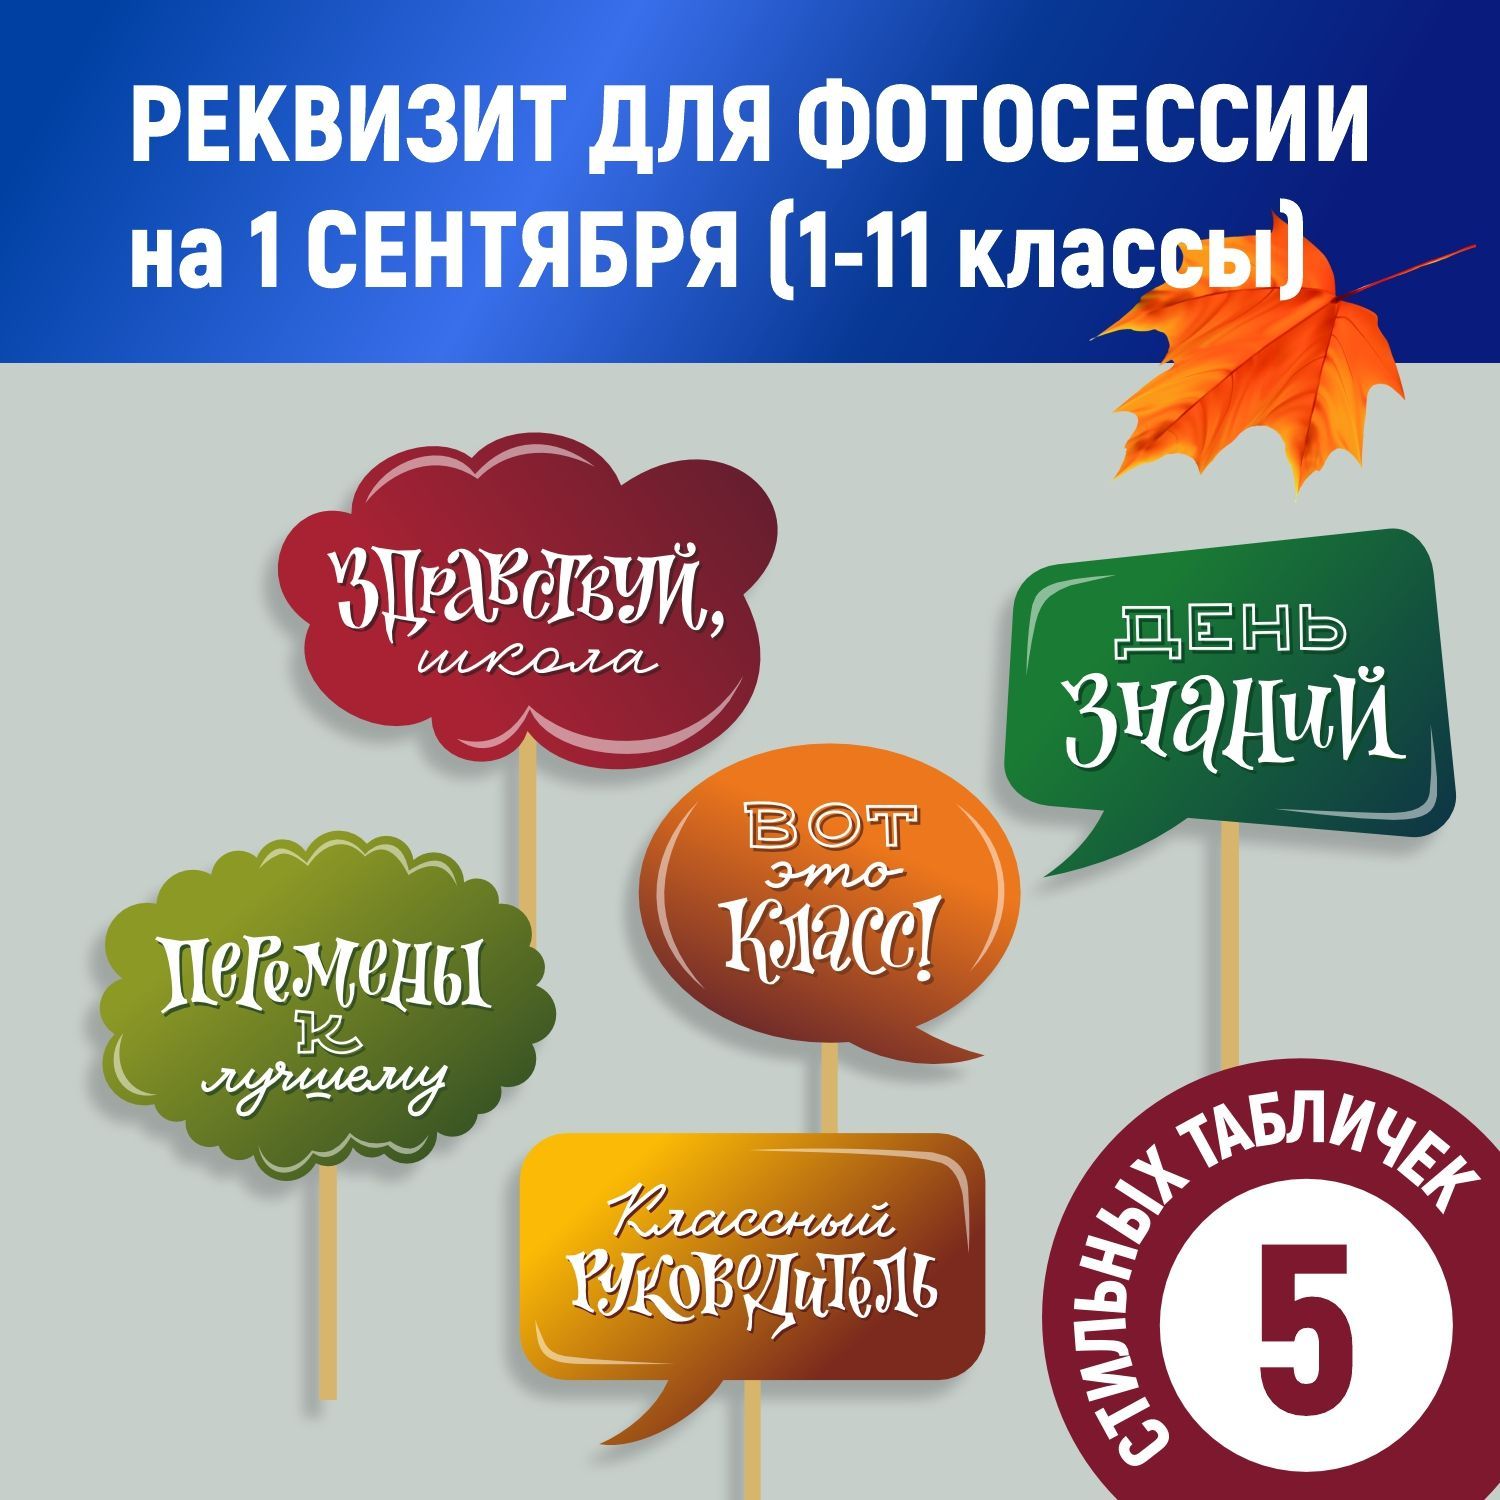 Фотобутафория для праздников и вечеринок – купить в Украине на апекс124.рф